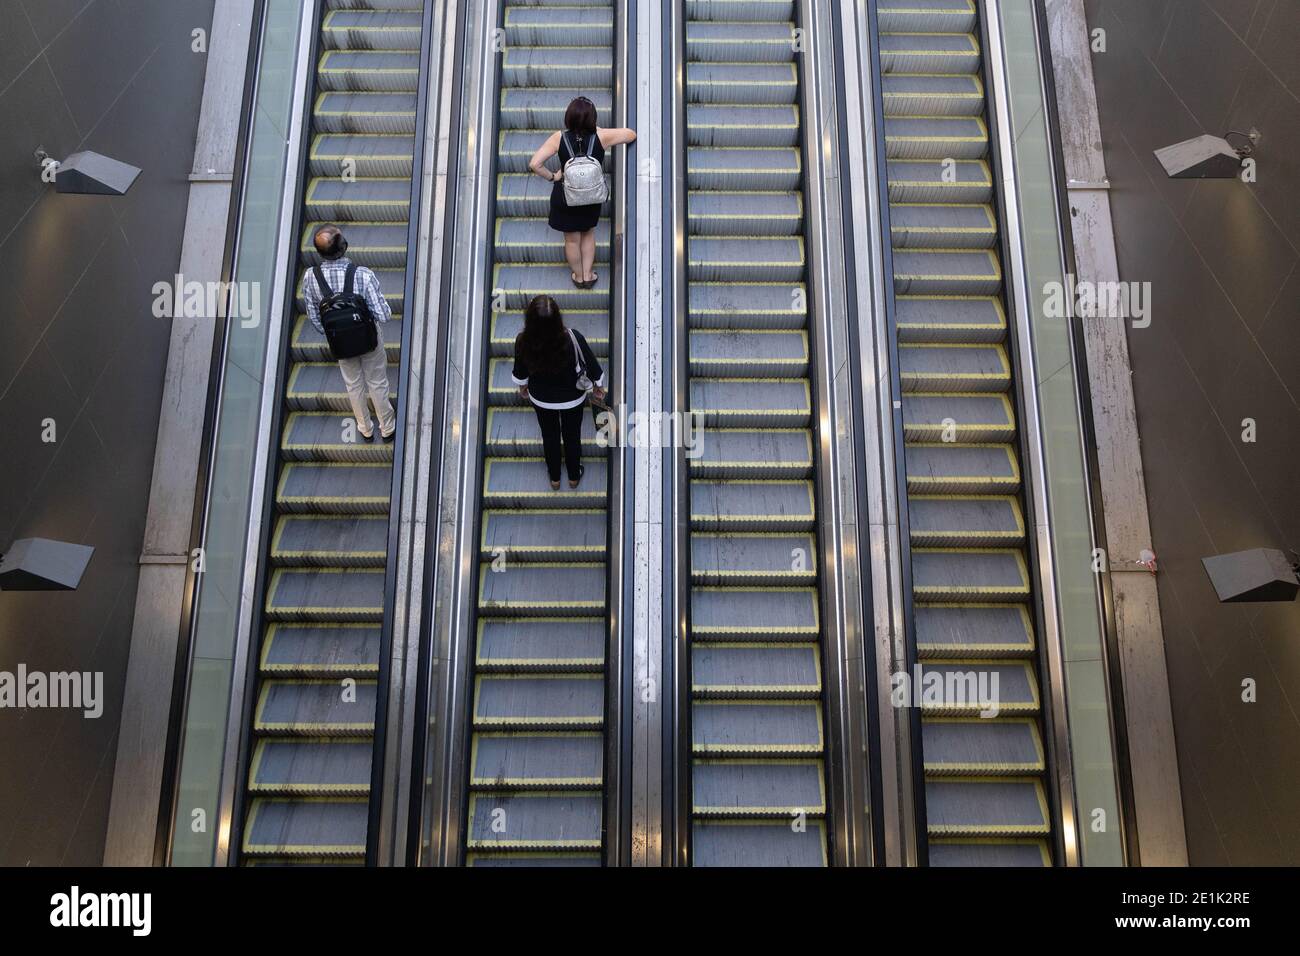 Santiago, Metropolitana, Chili. 7 janvier 2021. Les gens qui vont monter les escaliers mécaniques du métro de Santiago. Credit: Matias Basualdo/ZUMA Wire/Alamy Live News Banque D'Images